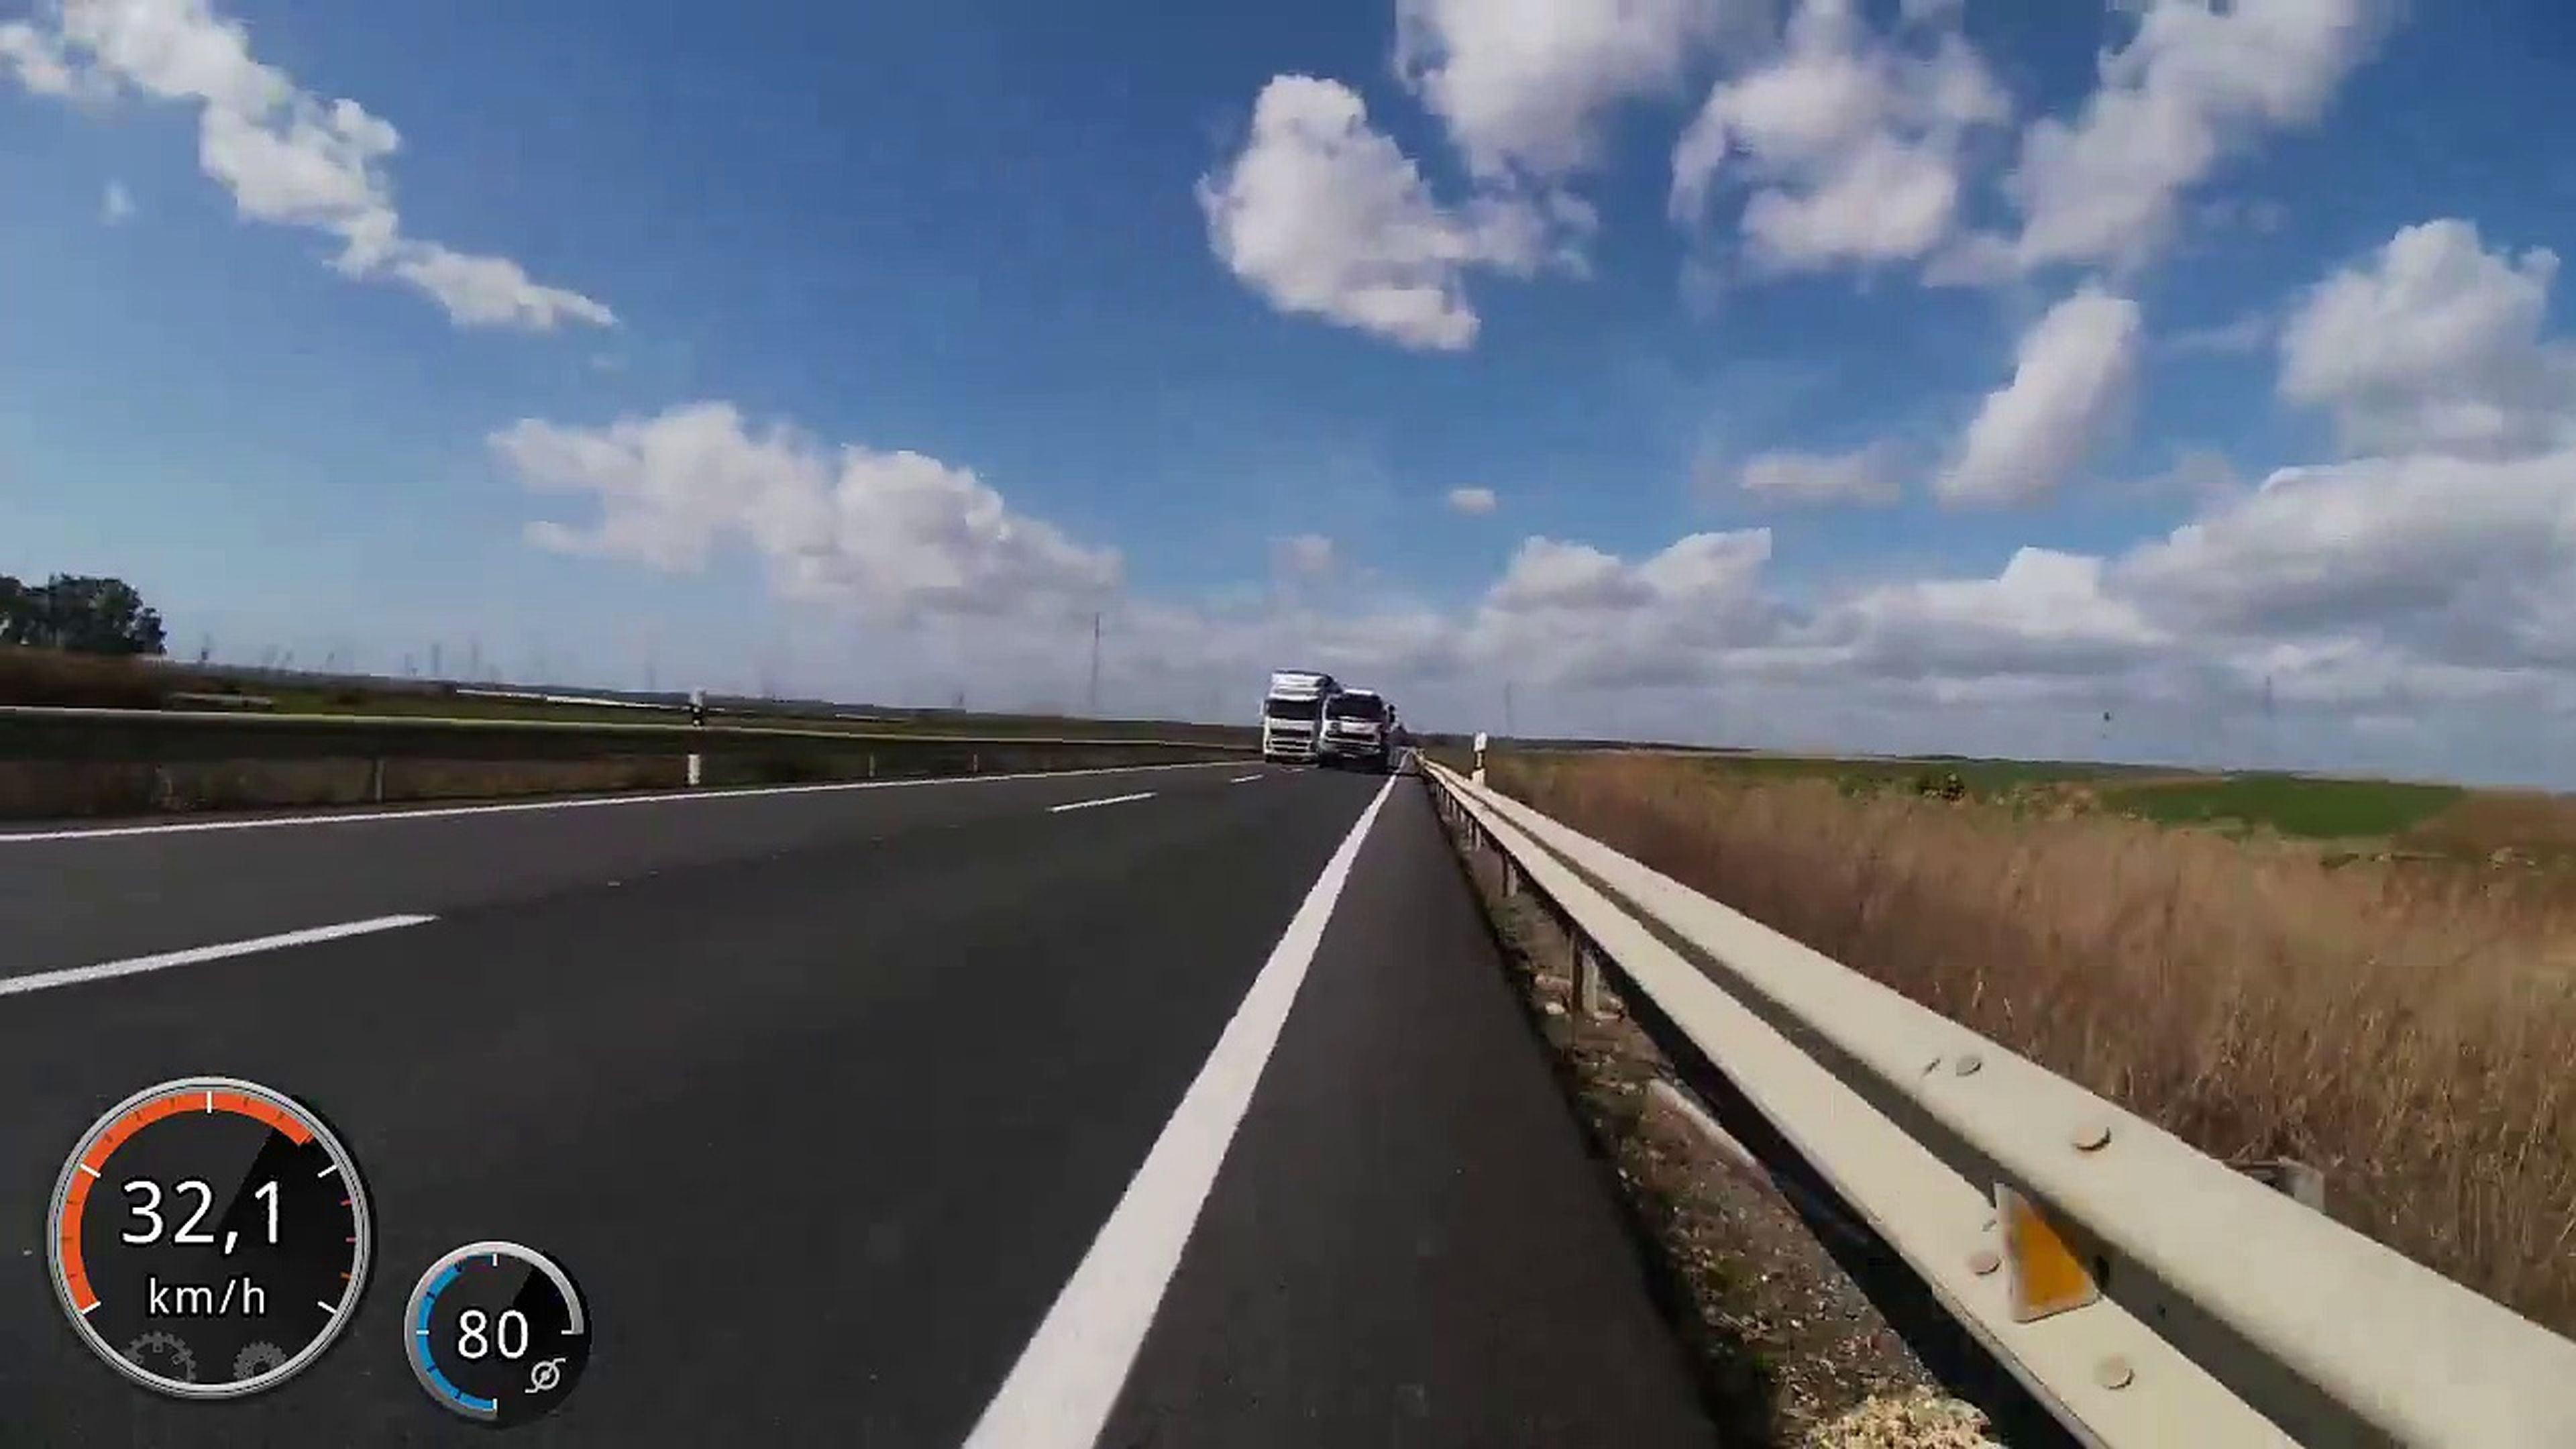 VÍDEO: este adelantamiento pone en peligro la vida de este ciclista [TG]